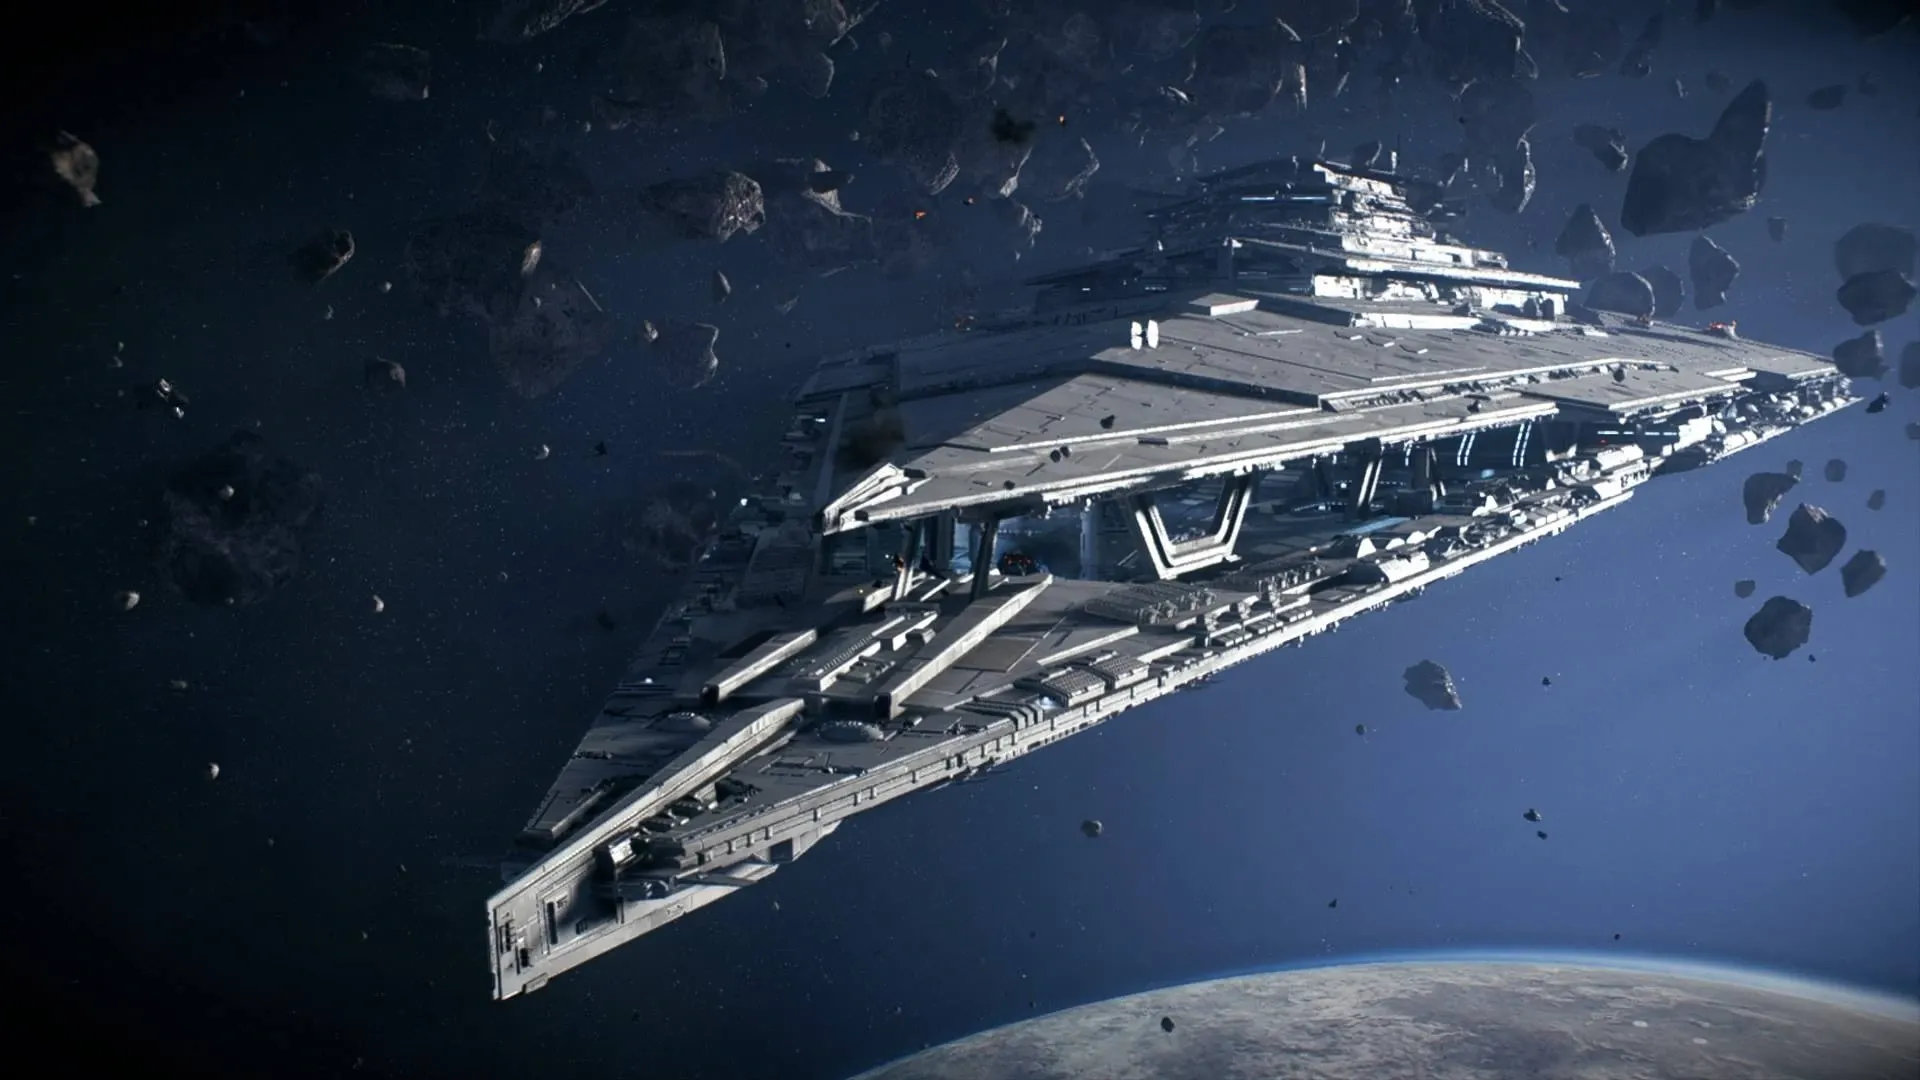 Resurgent Class Star Destroyer, Star Wars Battlefront